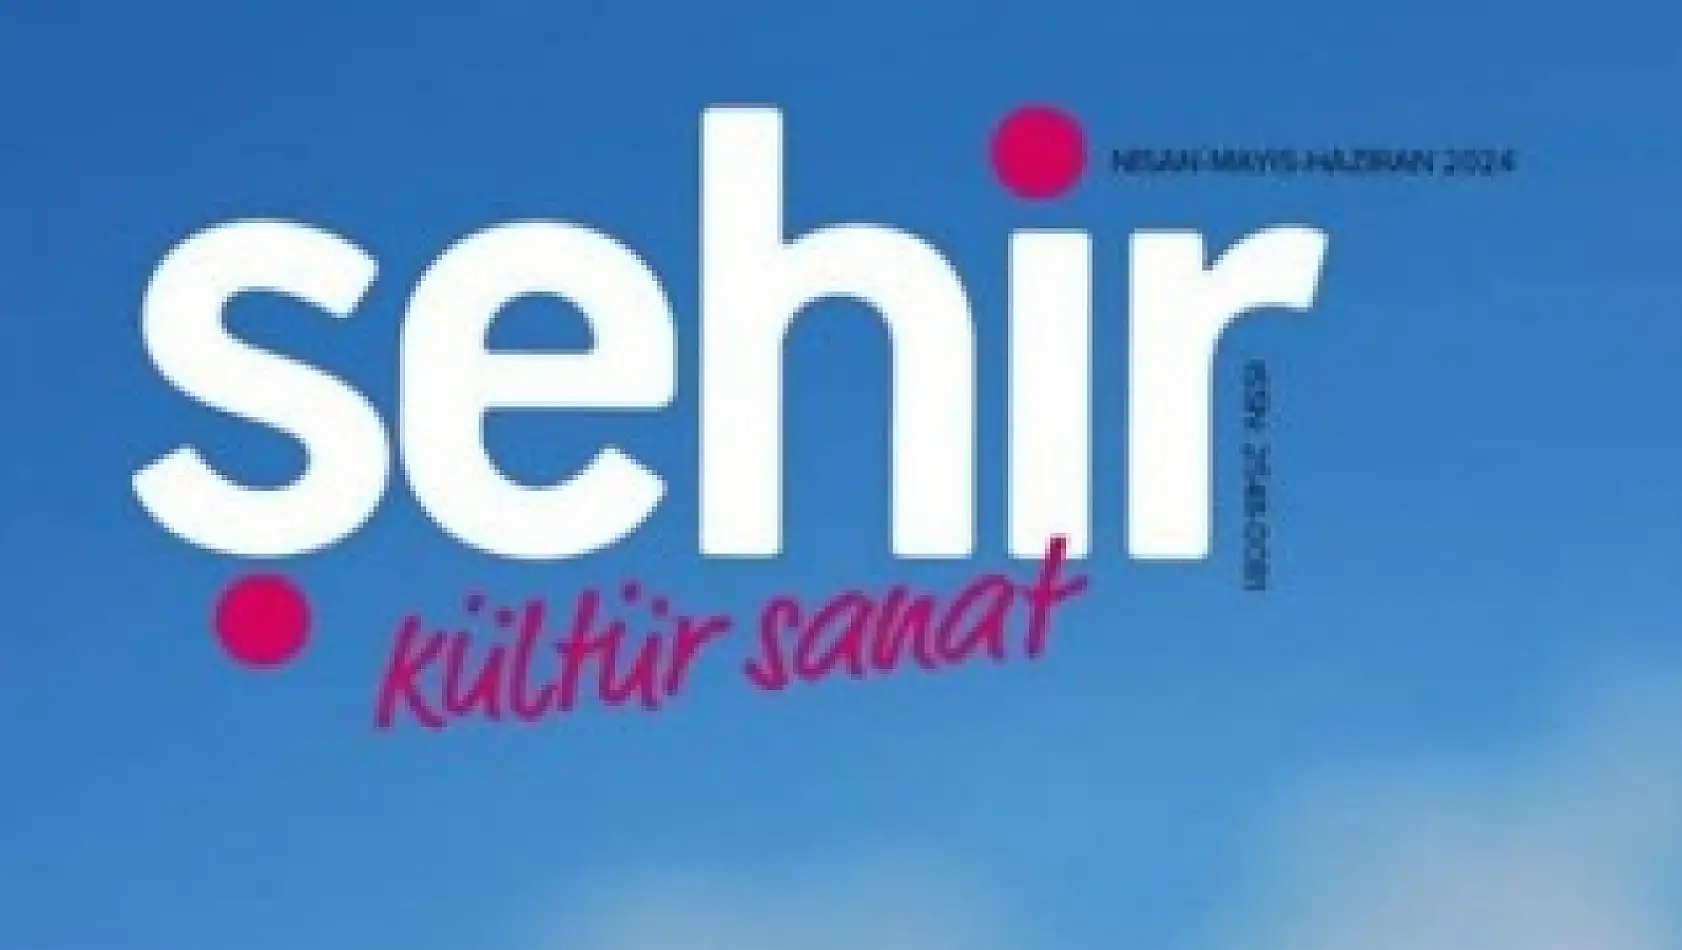 Kayseri'nin tarihi ve kültürü dergide buluşuyor!